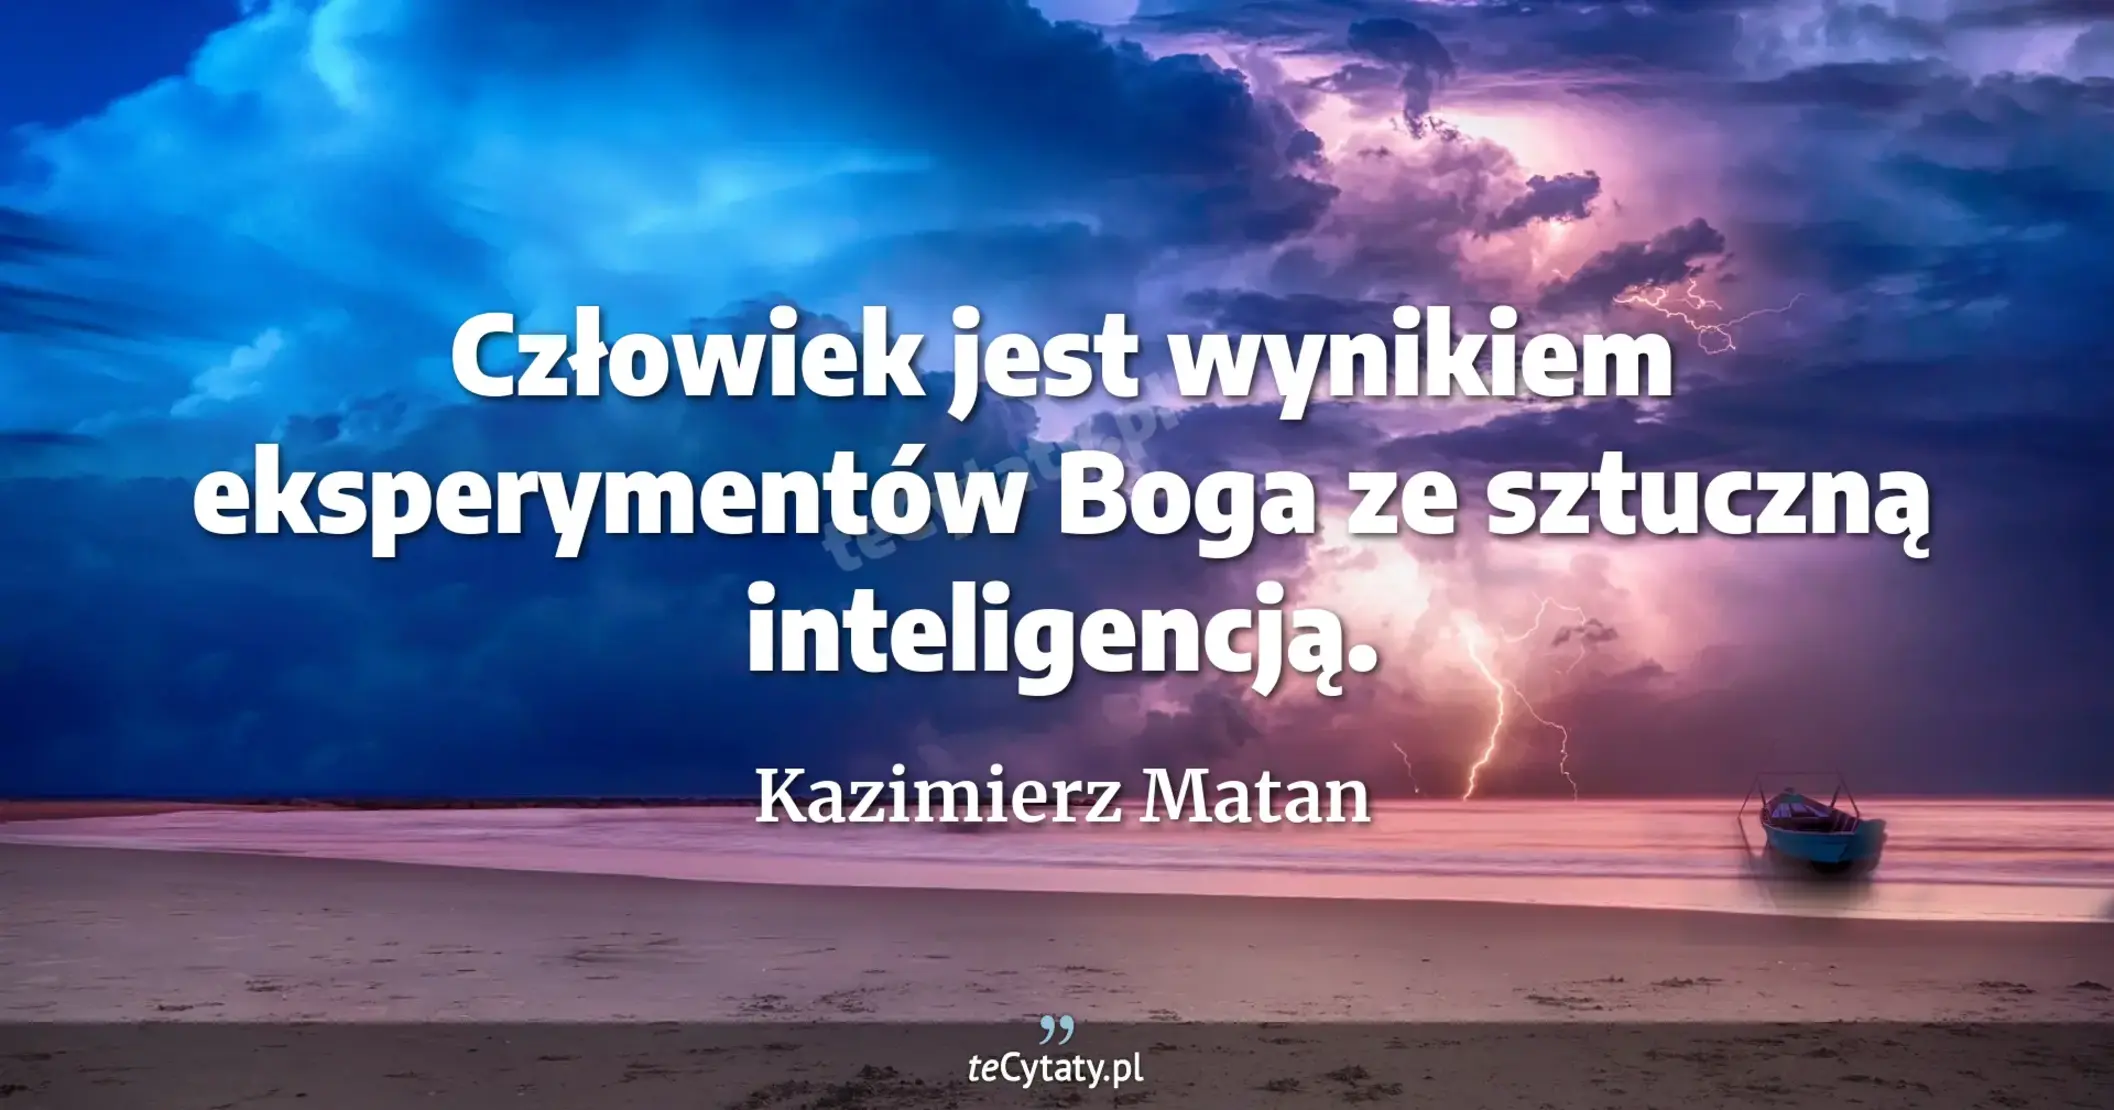 Człowiek jest wynikiem eksperymentów Boga ze sztuczną inteligencją. - Kazimierz Matan